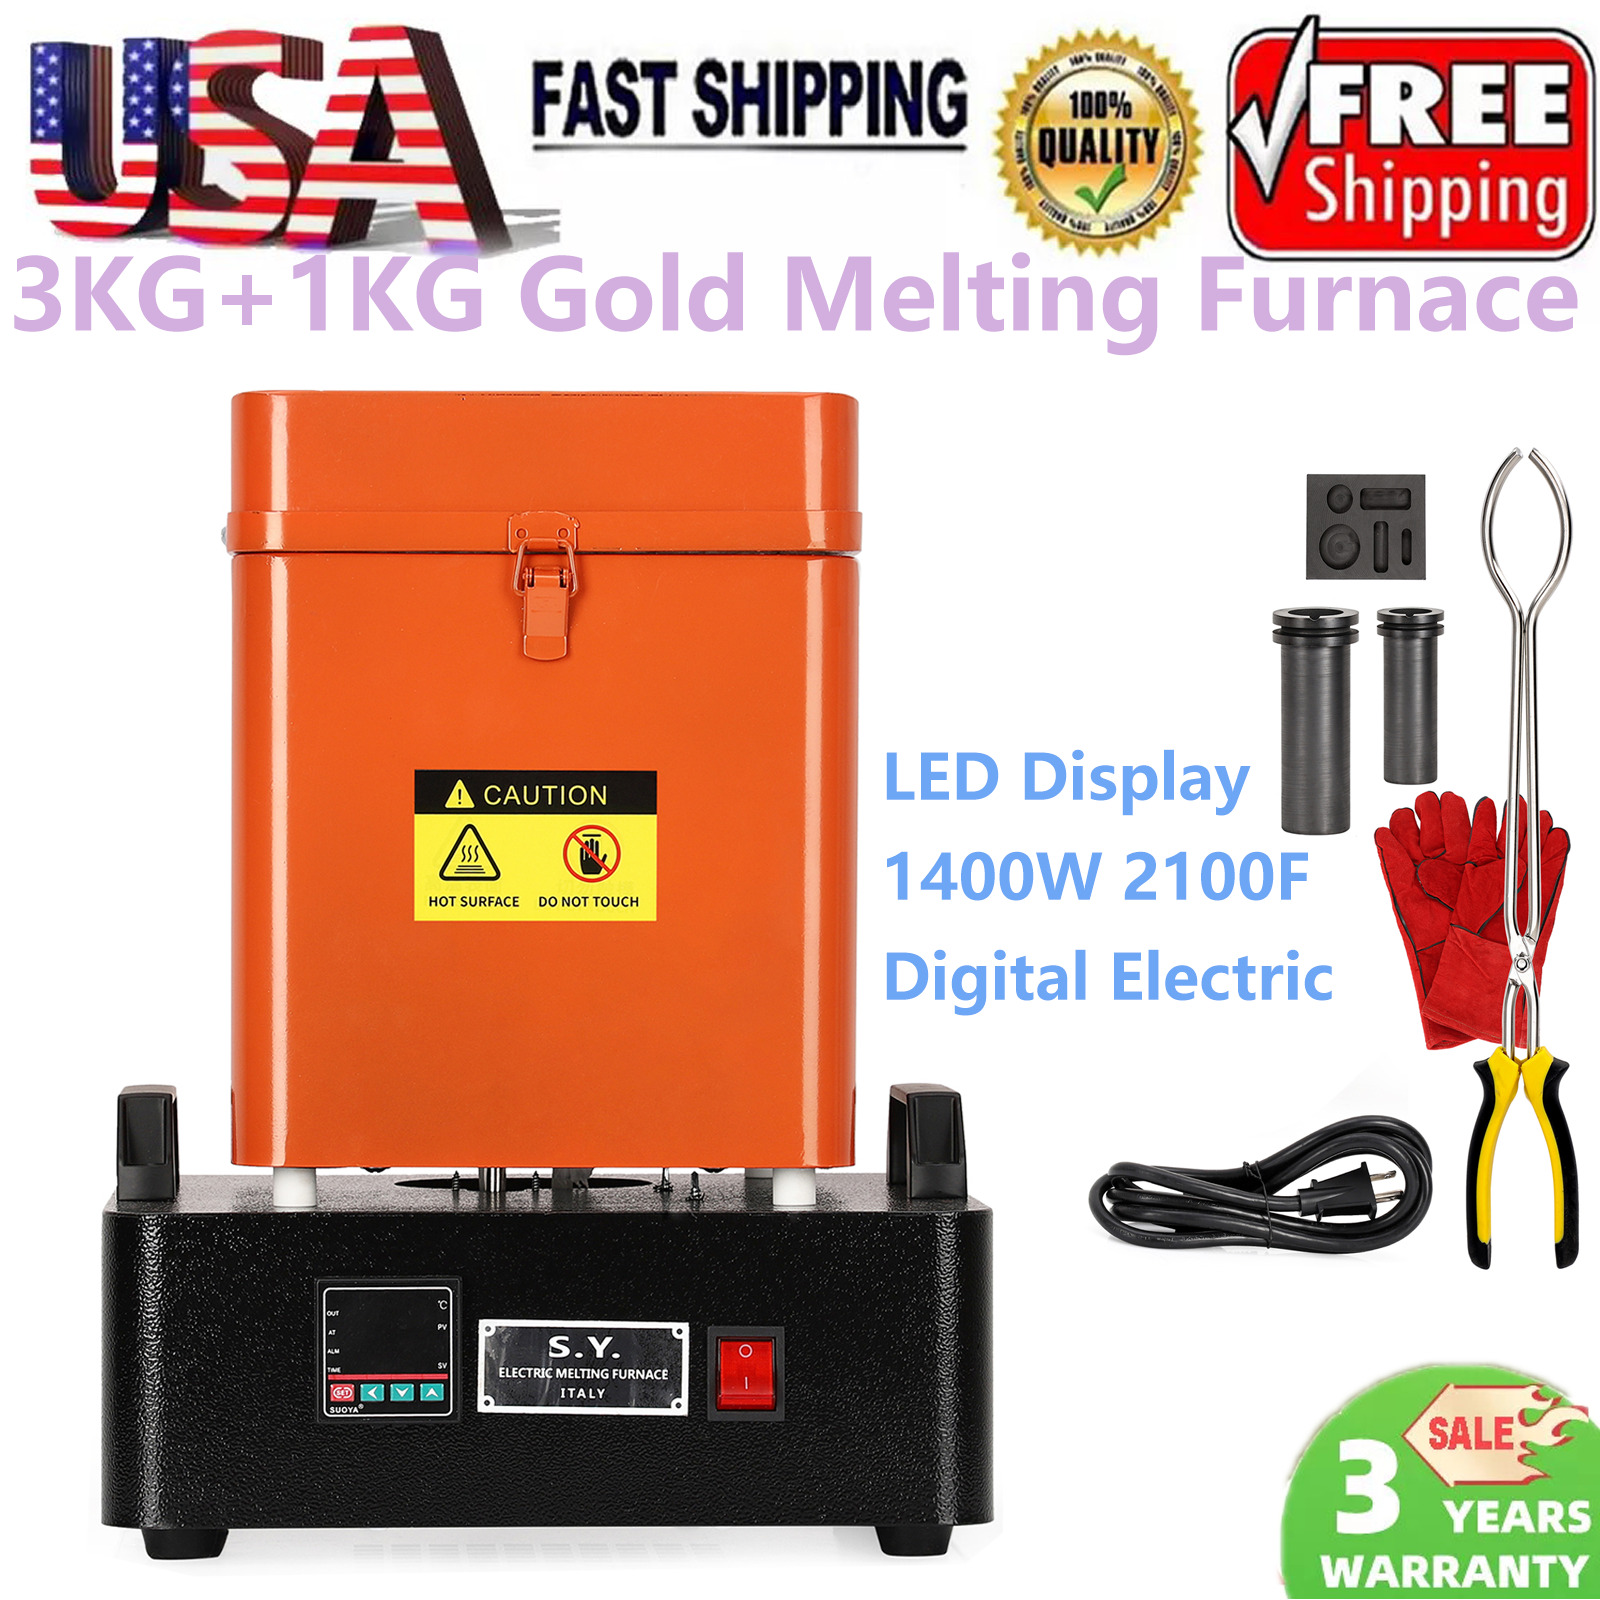 3KG+1KG Gold Melting Furnace 1400W 2100F LED Display Digital Electric Smelting